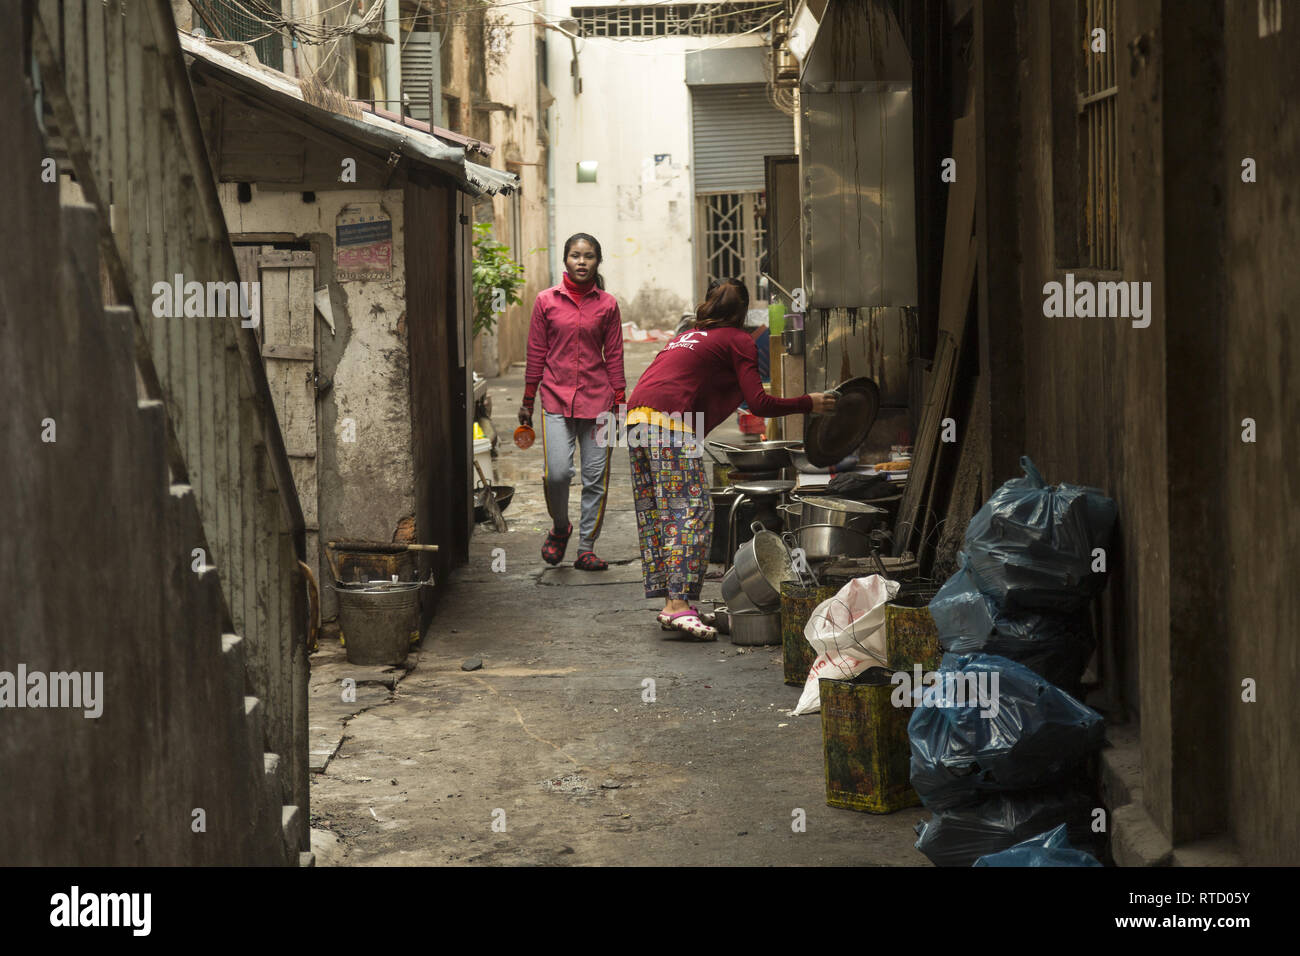 Narrow alley in Phnom Penh, Cambodia Stock Photo